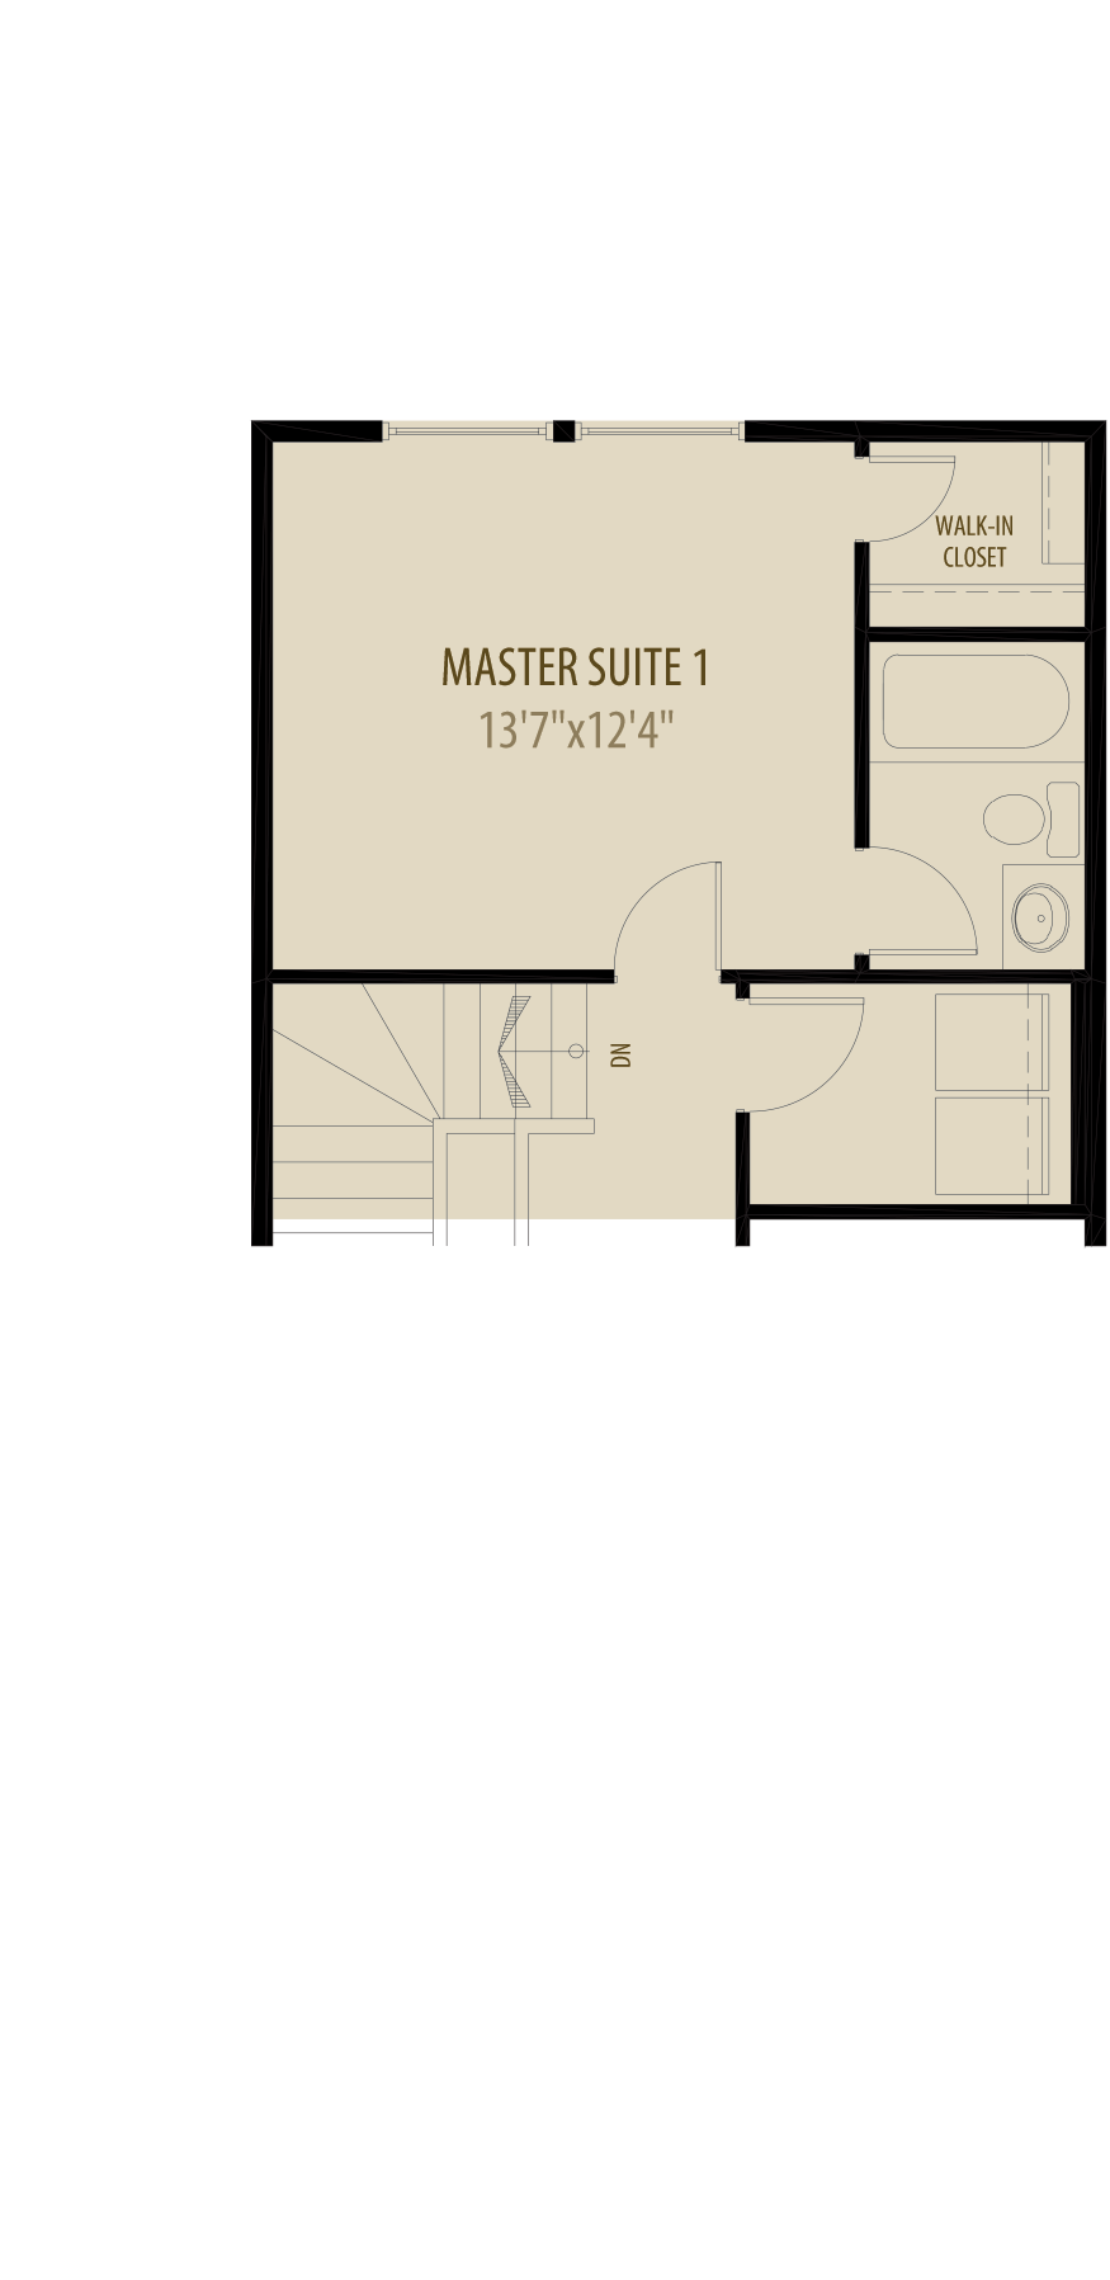 Dual Master Suites